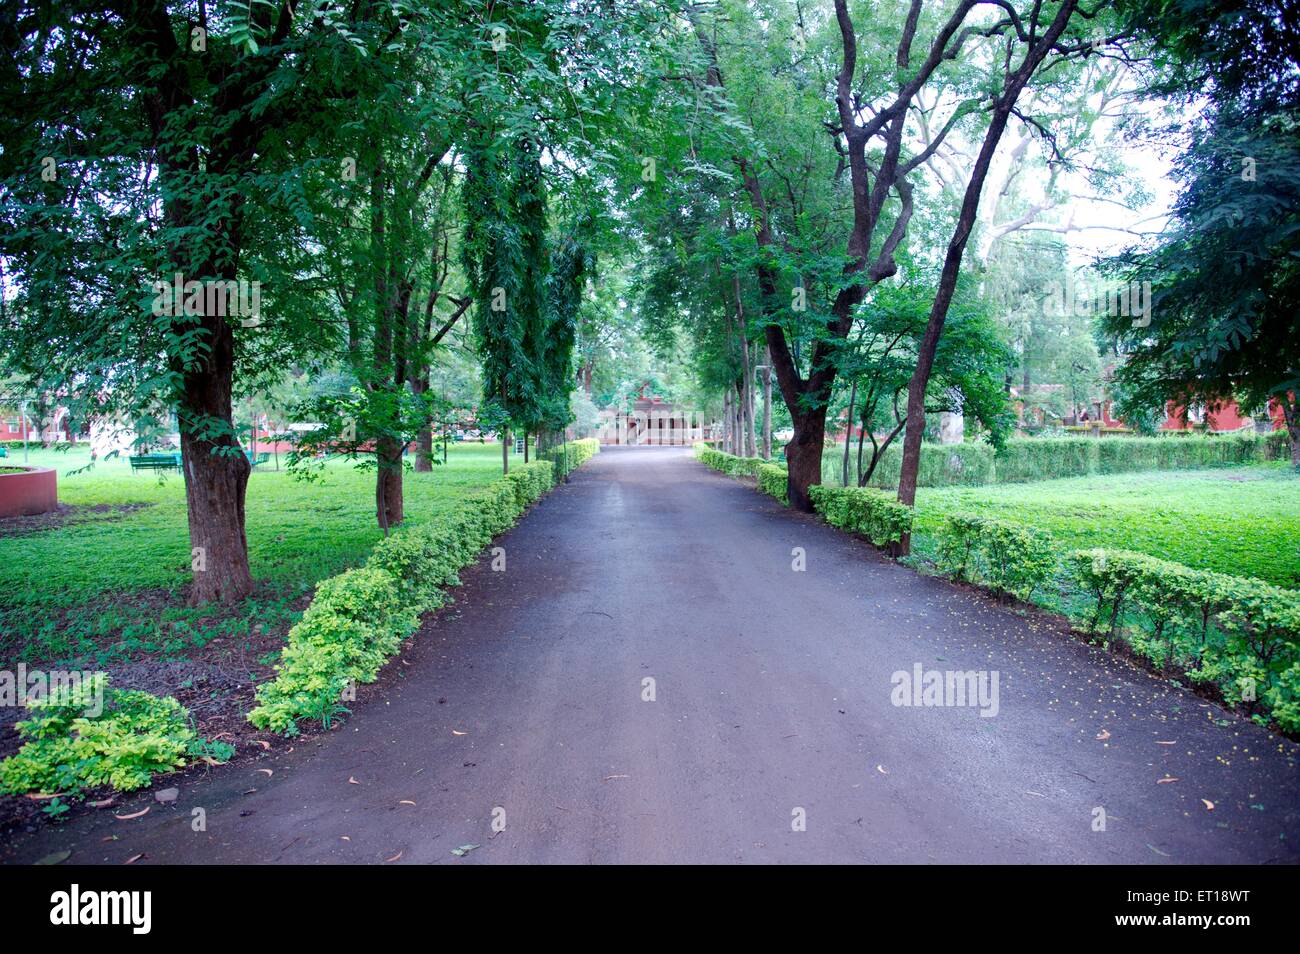 Chemin de jardin arbres Nasik Nashik Maharashtra Inde Asie Banque D'Images